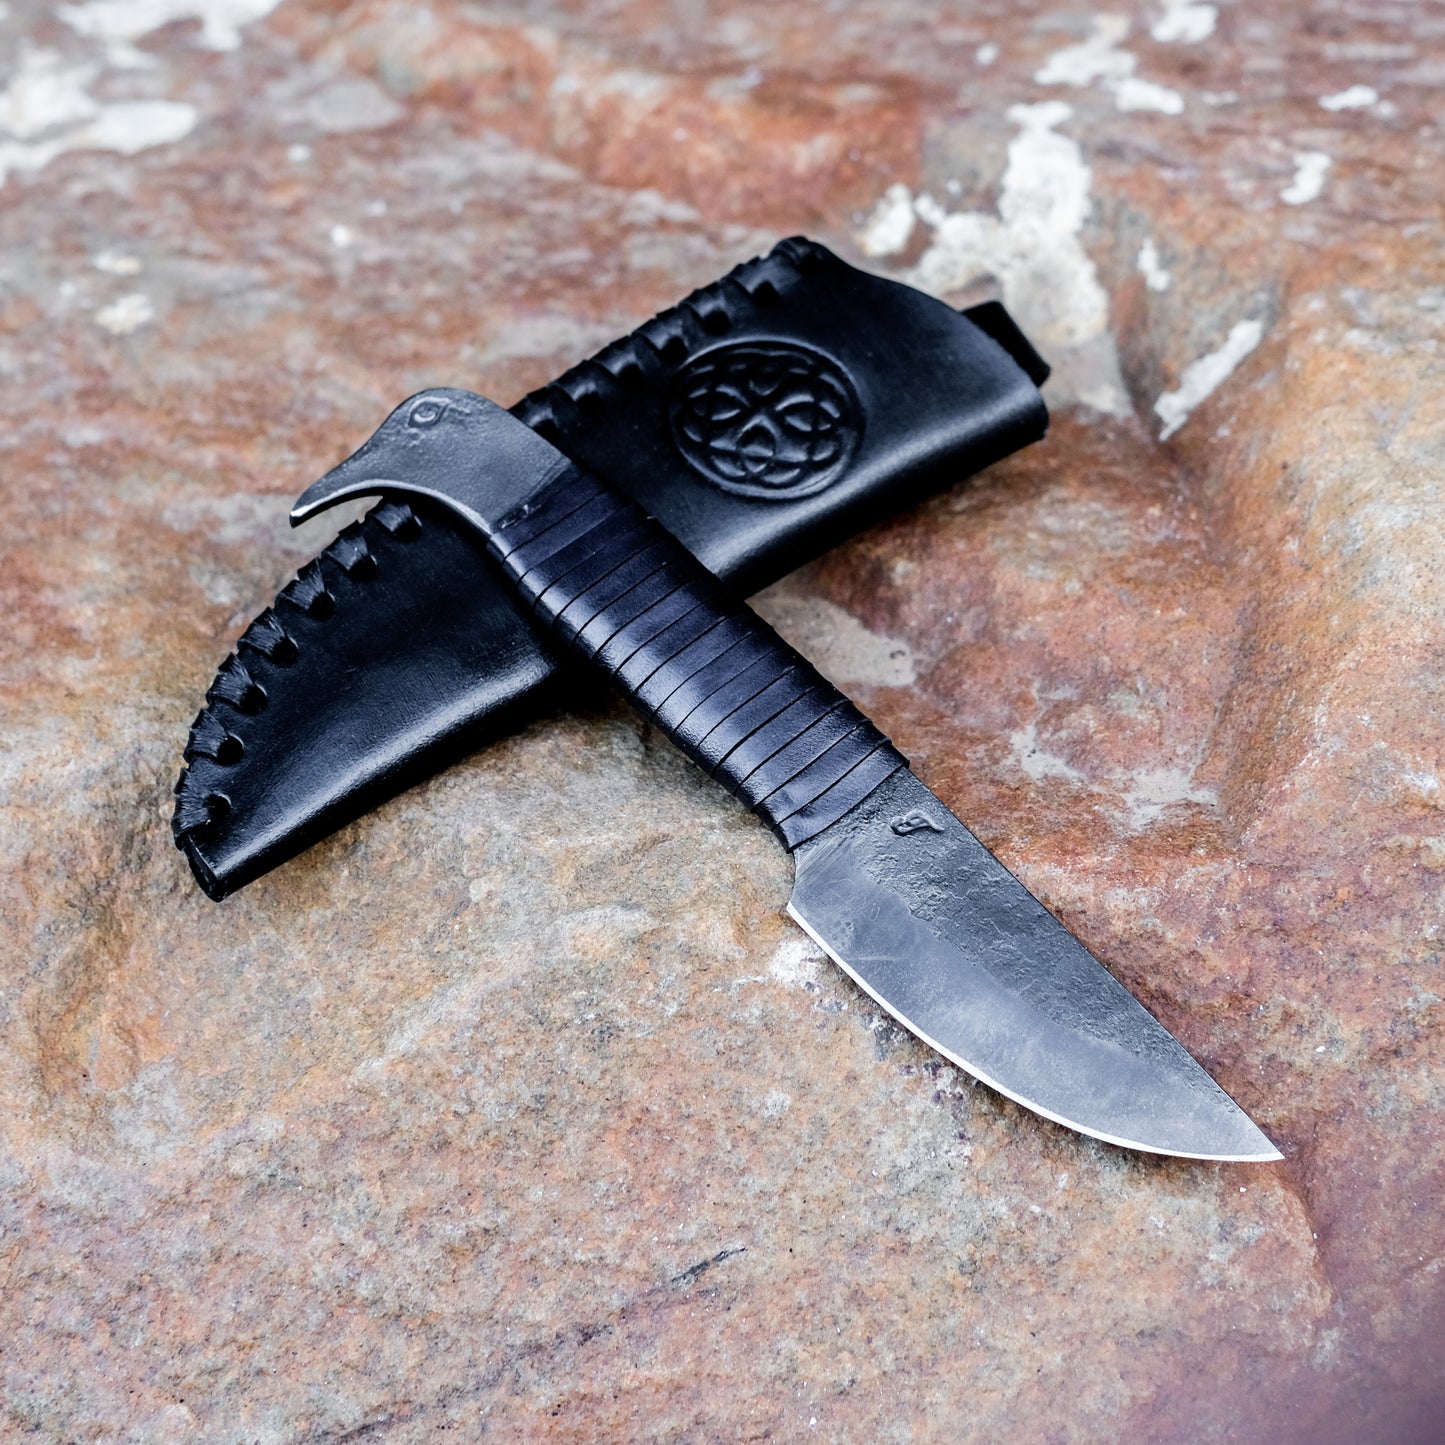 Kovaný vikingský nůž Ptačí hlava s pochvou